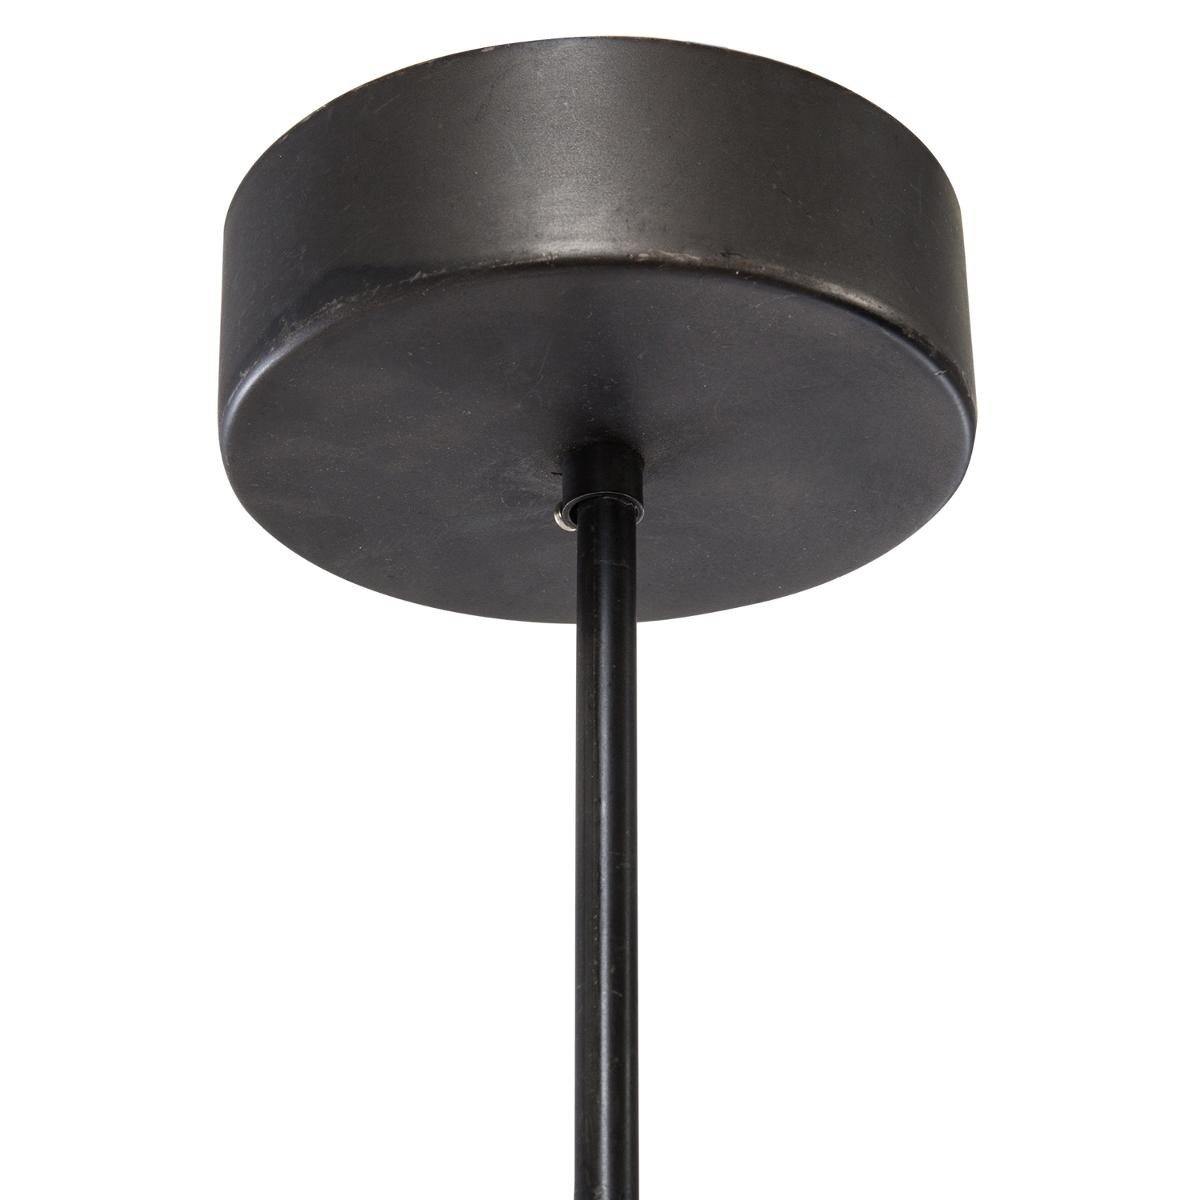 Lampa industrialna, Ø 25 cm, ażurowy klosz